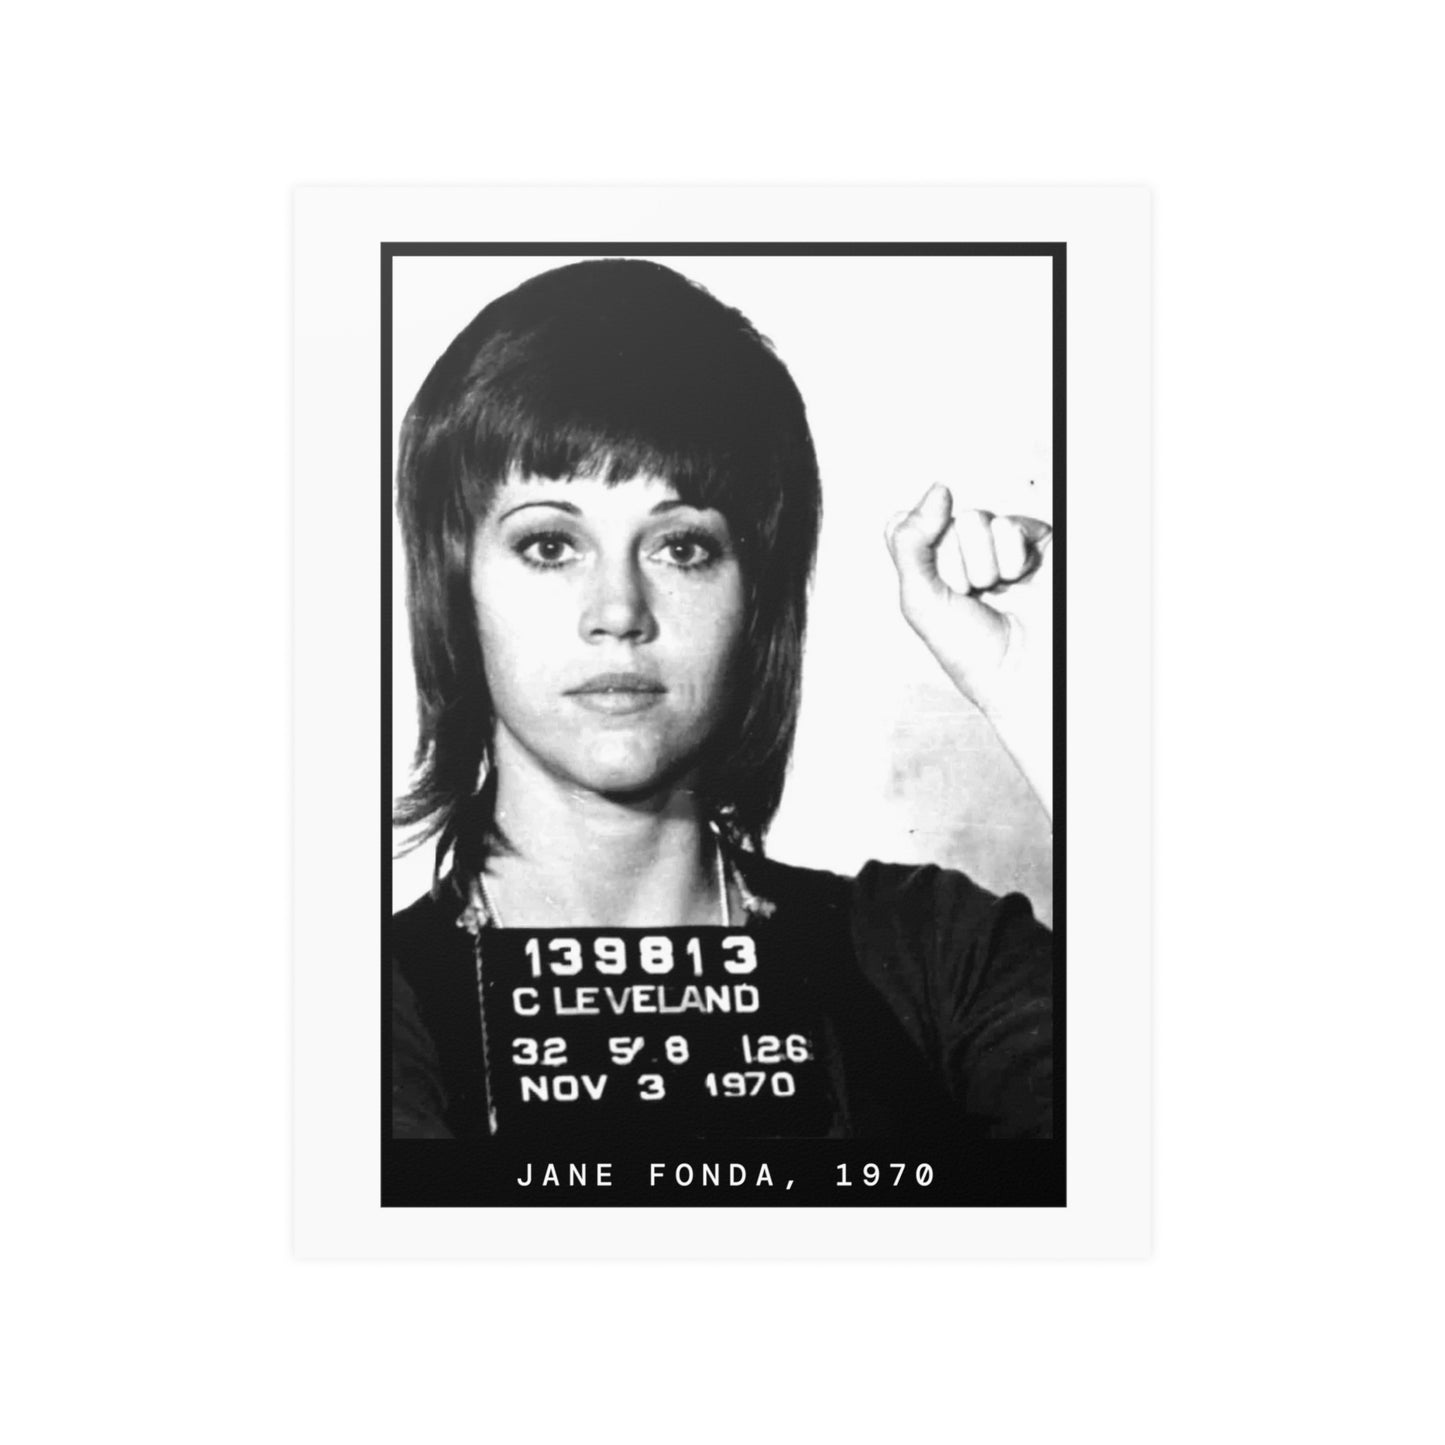 Jane Fonda, 1970 Activist Mugshot Poster